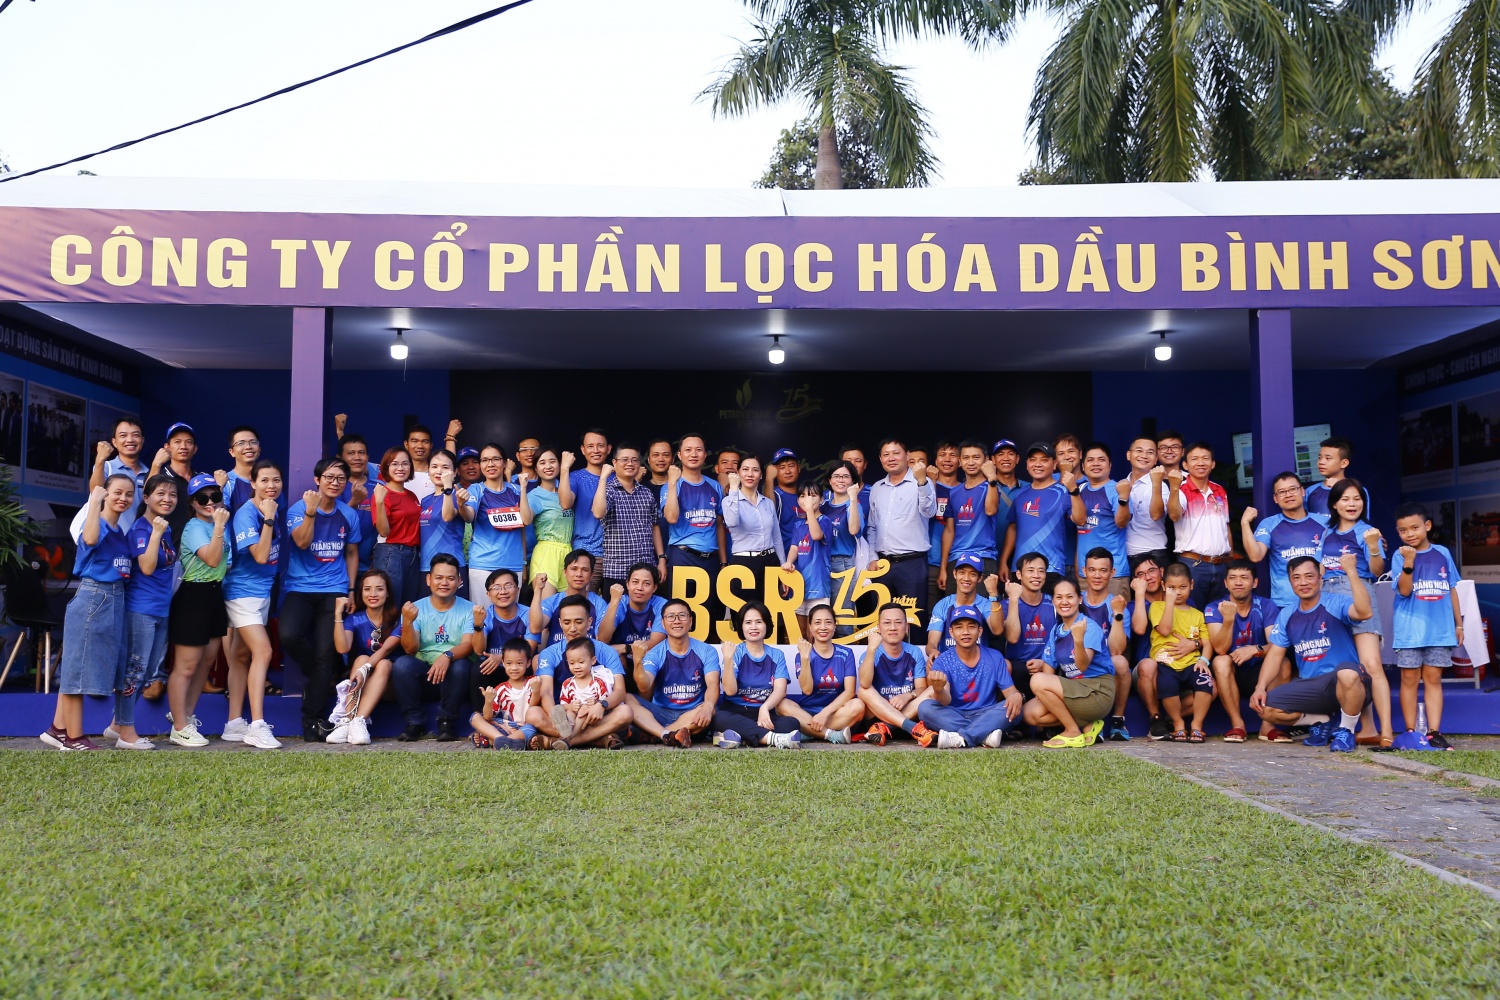 Đảng bộ BSR trên hành trình 15 năm xây dựng và phát triển cùng Đảng bộ Tập đoàn Dầu khí Quốc gia Việt Nam